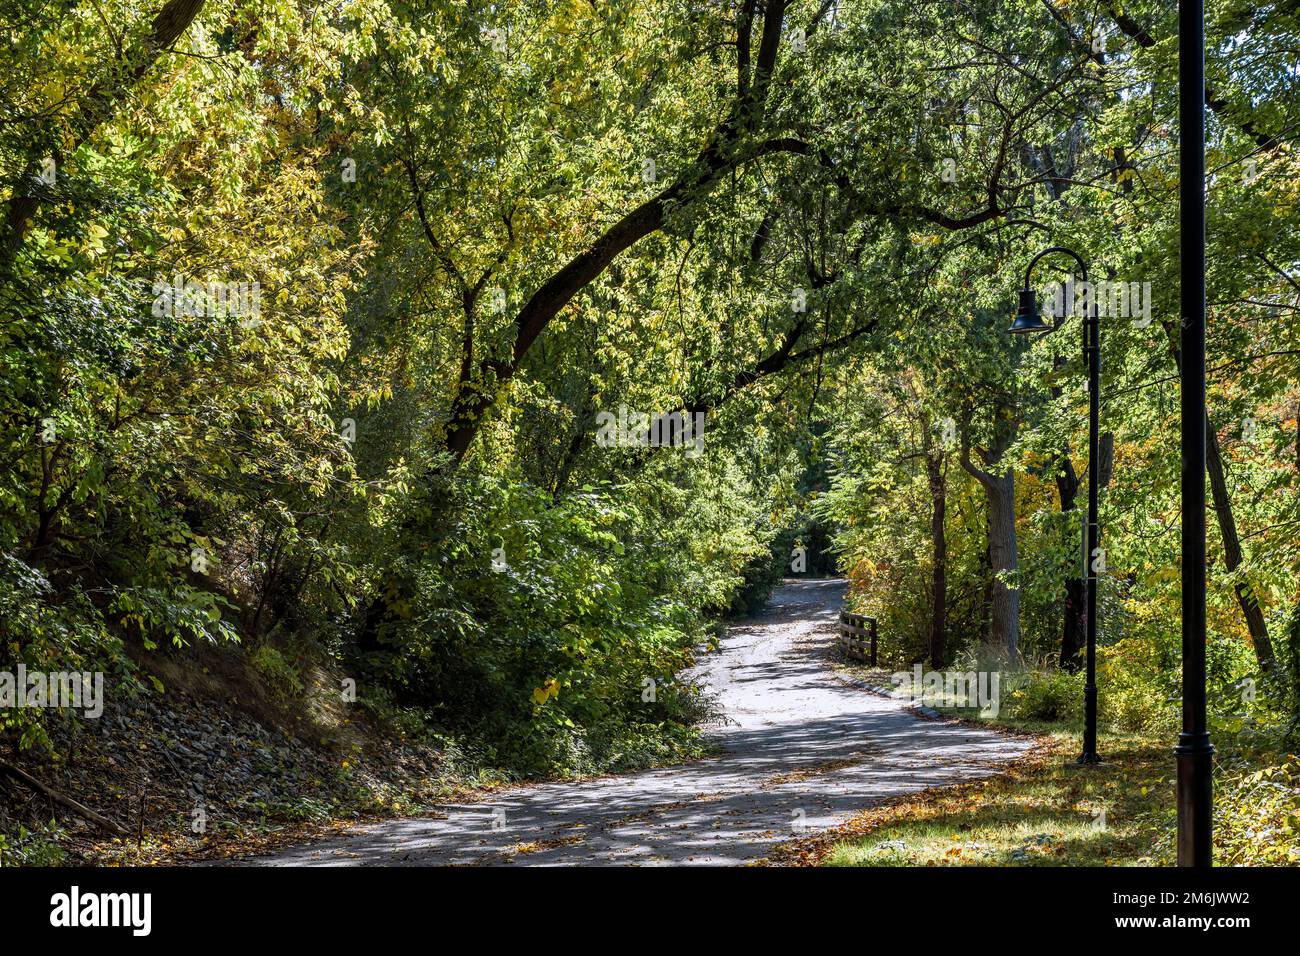 Eine überwältigende Landschaft mit einem Fußweg durch einen Laubwald mit fallendem Laub lädt Reisende und Touristen ein, die die Schönheit des Herbstes zu genießen Stockfoto